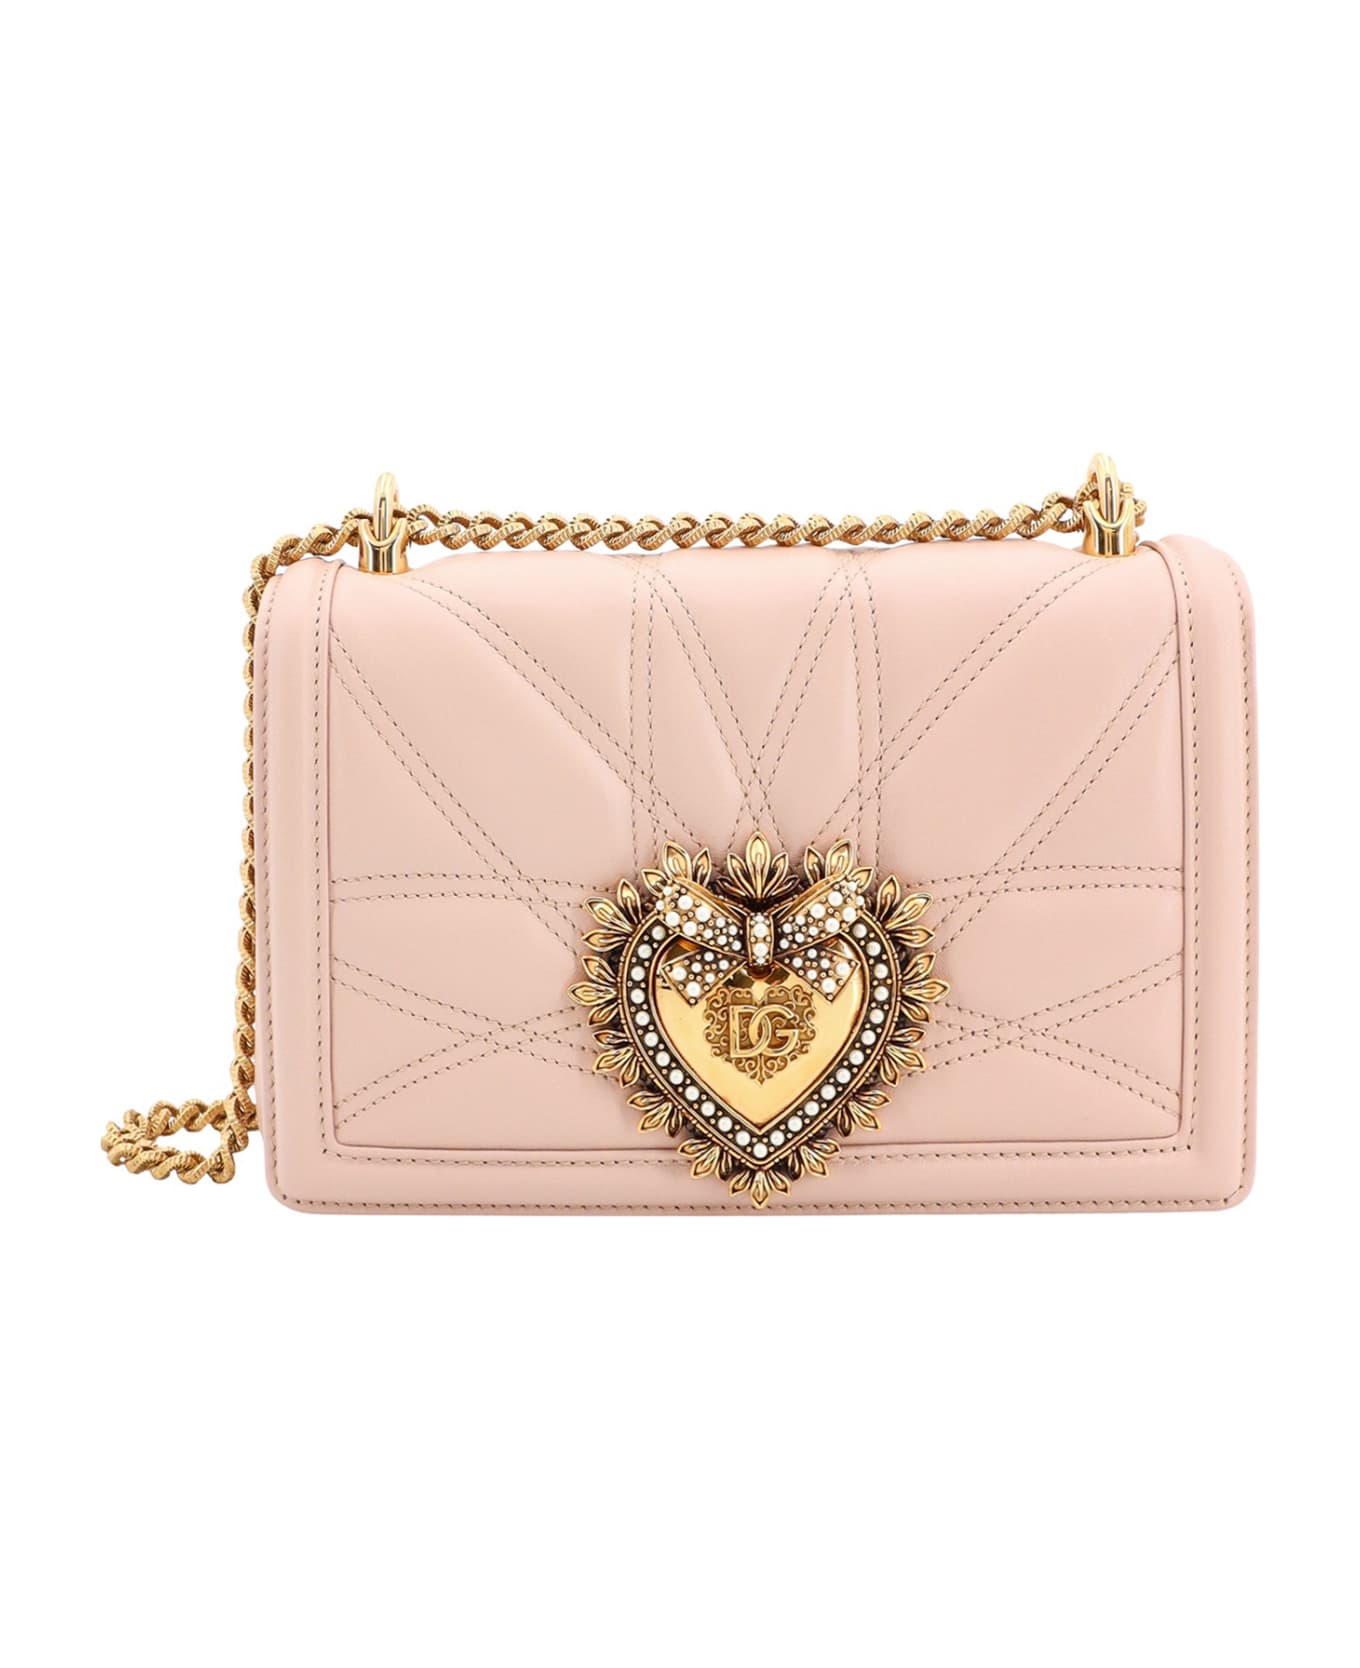 Dolce & Gabbana Devotion Shoulder Bag - Pink